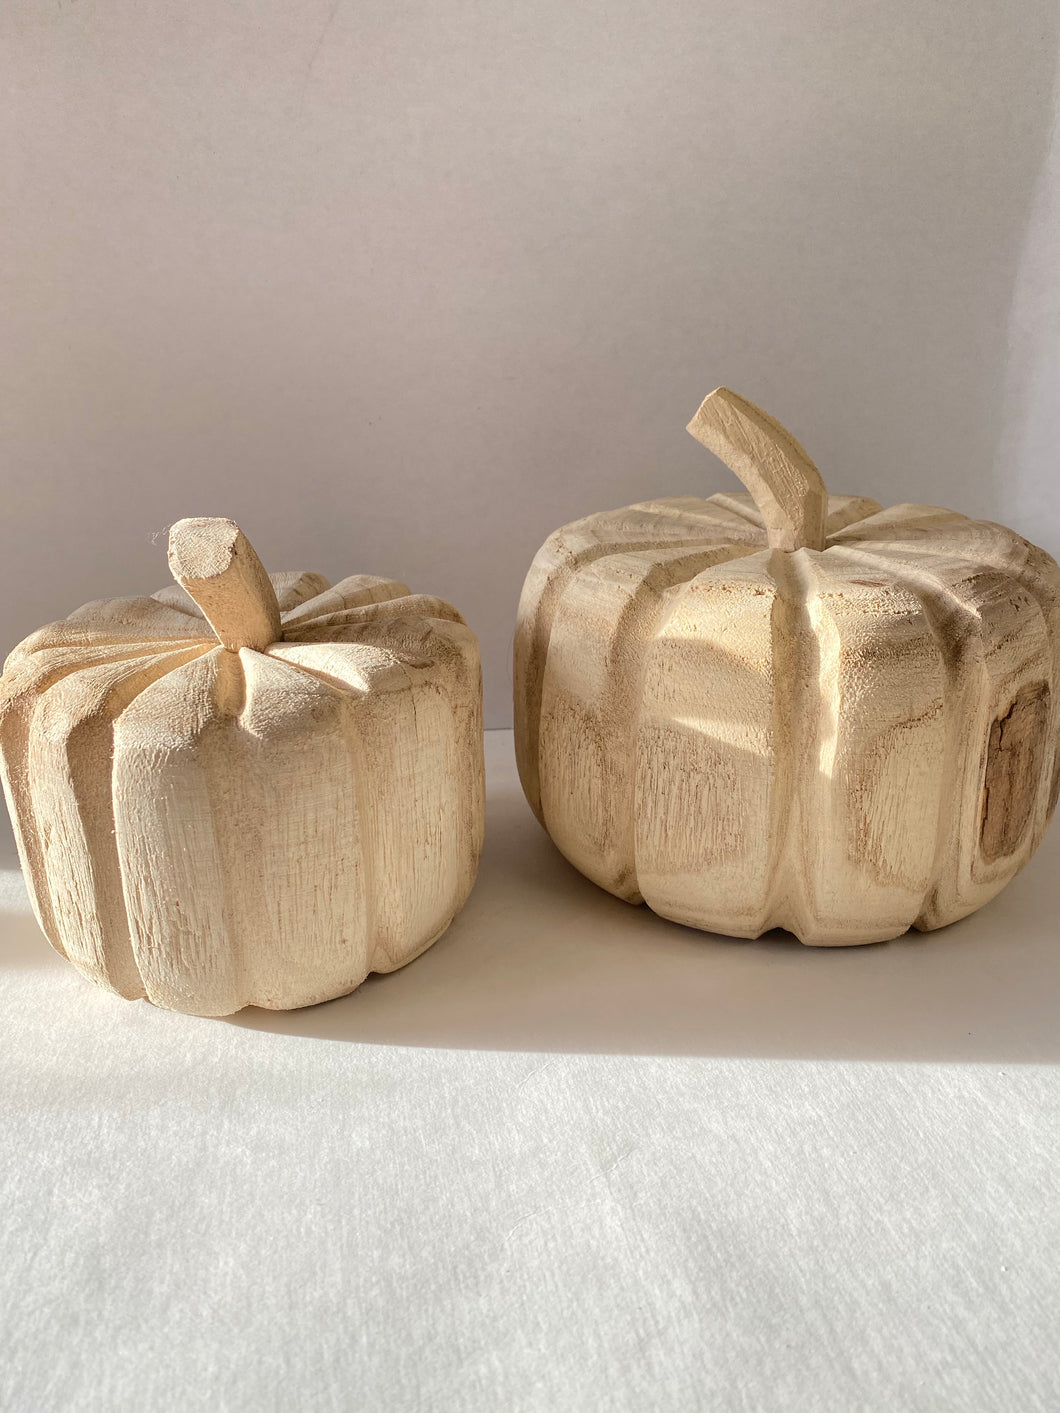 Wooden Pumpkin